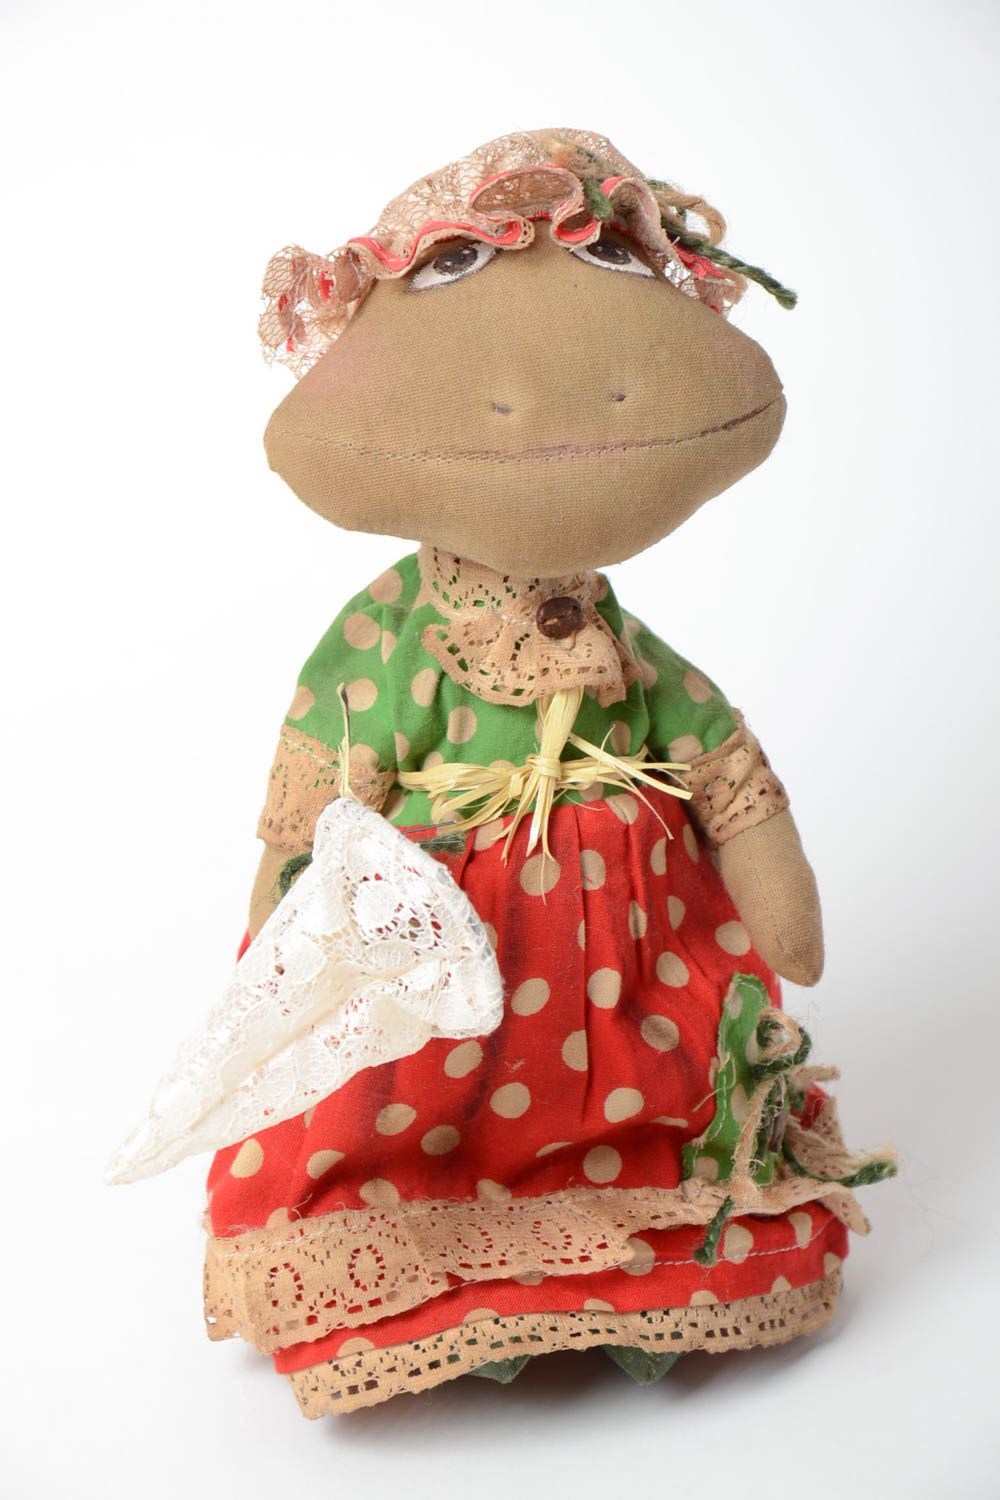 Ароматная кукла лягушка из хлопка с запахом кофе и ванили пошитая вручную фото 2